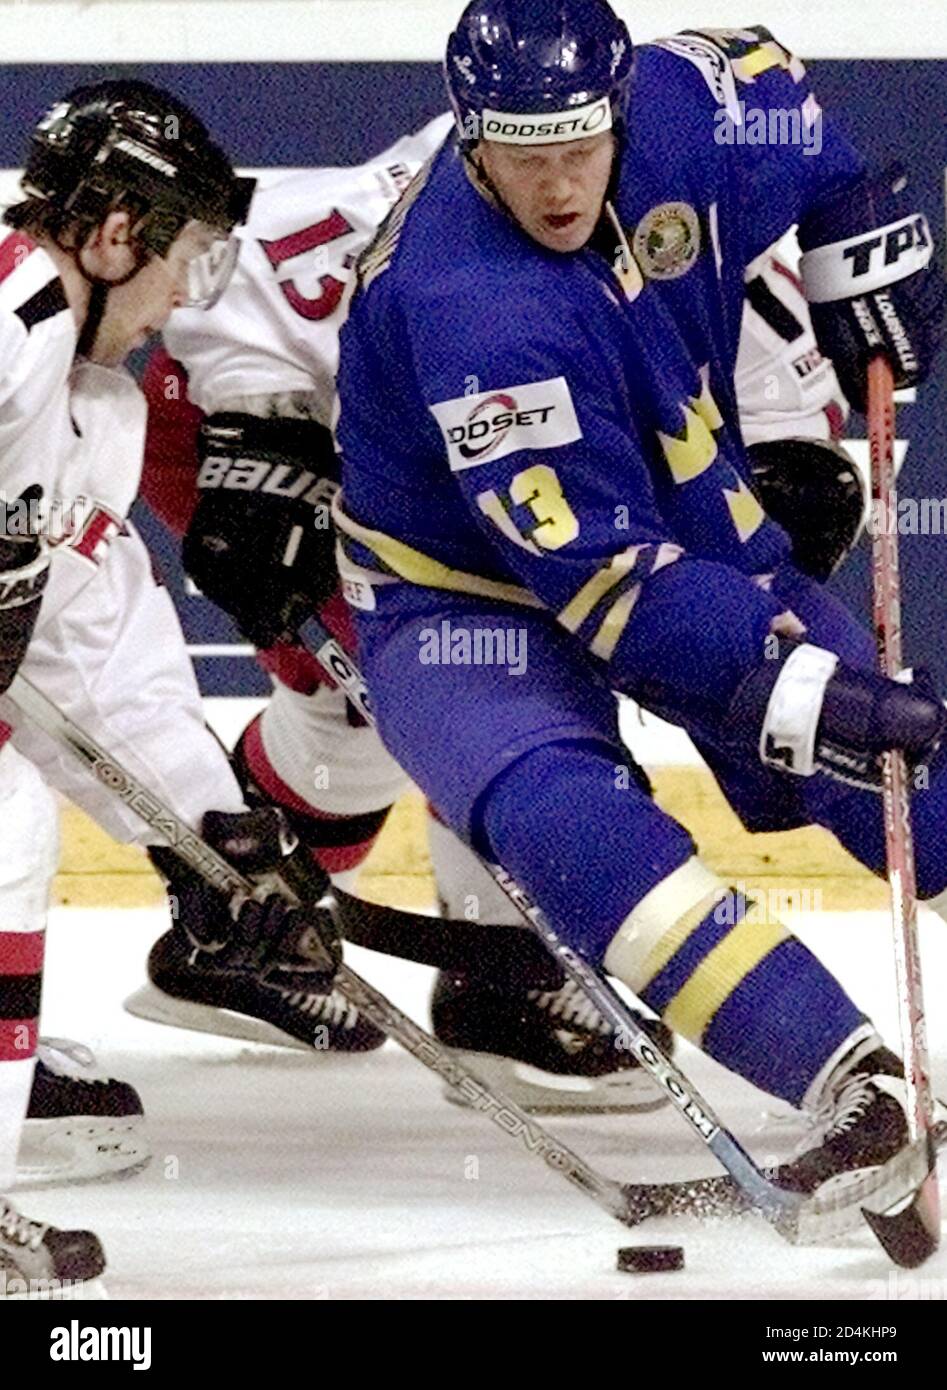 Tapis Sundin (R) de Suède tente de repousser un palet au-delà de la Suisse Beat Forster (L) lors de leur match de qualification au championnat du monde de hockey sur glace à Turku, le 6 mai 2003. La Suède a affrontée le match 5-2. REUTERS/Alexander Demianchuk AD Banque D'Images